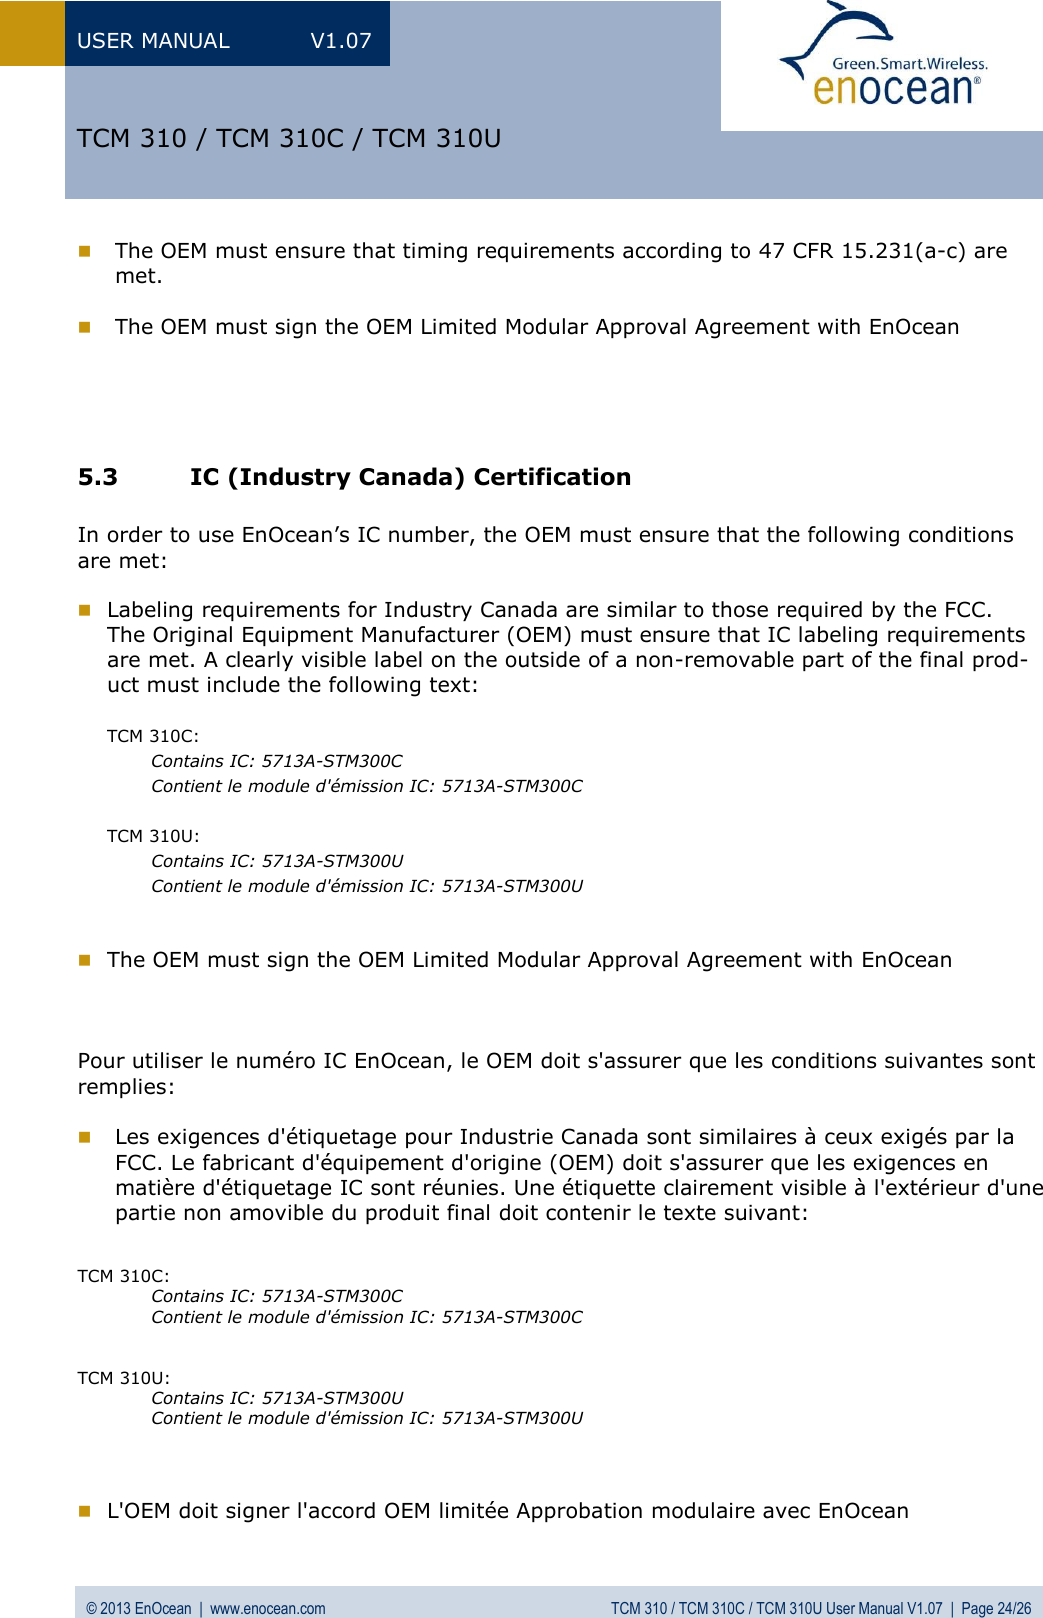 USER MANUAL  V1.07 © 2013 EnOcean  |  www.enocean.com  TCM 310 / TCM 310C / TCM 310U User Manual V1.07  |  Page 24/26   TCM 310 / TCM 310C / TCM 310U  The OEM must ensure that timing requirements according to 47 CFR 15.231(a-c) are met.   The OEM must sign the OEM Limited Modular Approval Agreement with EnOcean     5.3 IC (Industry Canada) Certification  In order to use EnOcean’s IC number, the OEM must ensure that the following conditions are met:   Labeling requirements for Industry Canada are similar to those required by the FCC. The Original Equipment Manufacturer (OEM) must ensure that IC labeling requirements are met. A clearly visible label on the outside of a non-removable part of the final prod-uct must include the following text:  TCM 310C: Contains IC: 5713A-STM300C    Contient le module d&apos;émission IC: 5713A-STM300C  TCM 310U:  Contains IC: 5713A-STM300U    Contient le module d&apos;émission IC: 5713A-STM300U    The OEM must sign the OEM Limited Modular Approval Agreement with EnOcean    Pour utiliser le numéro IC EnOcean, le OEM doit s&apos;assurer que les conditions suivantes sont remplies:   Les exigences d&apos;étiquetage pour Industrie Canada sont similaires à ceux exigés par la FCC. Le fabricant d&apos;équipement d&apos;origine (OEM) doit s&apos;assurer que les exigences en  matière d&apos;étiquetage IC sont réunies. Une étiquette clairement visible à l&apos;extérieur d&apos;une partie non amovible du produit final doit contenir le texte suivant:   TCM 310C: Contains IC: 5713A-STM300C  Contient le module d&apos;émission IC: 5713A-STM300C   TCM 310U: Contains IC: 5713A-STM300U  Contient le module d&apos;émission IC: 5713A-STM300U     L&apos;OEM doit signer l&apos;accord OEM limitée Approbation modulaire avec EnOcean  